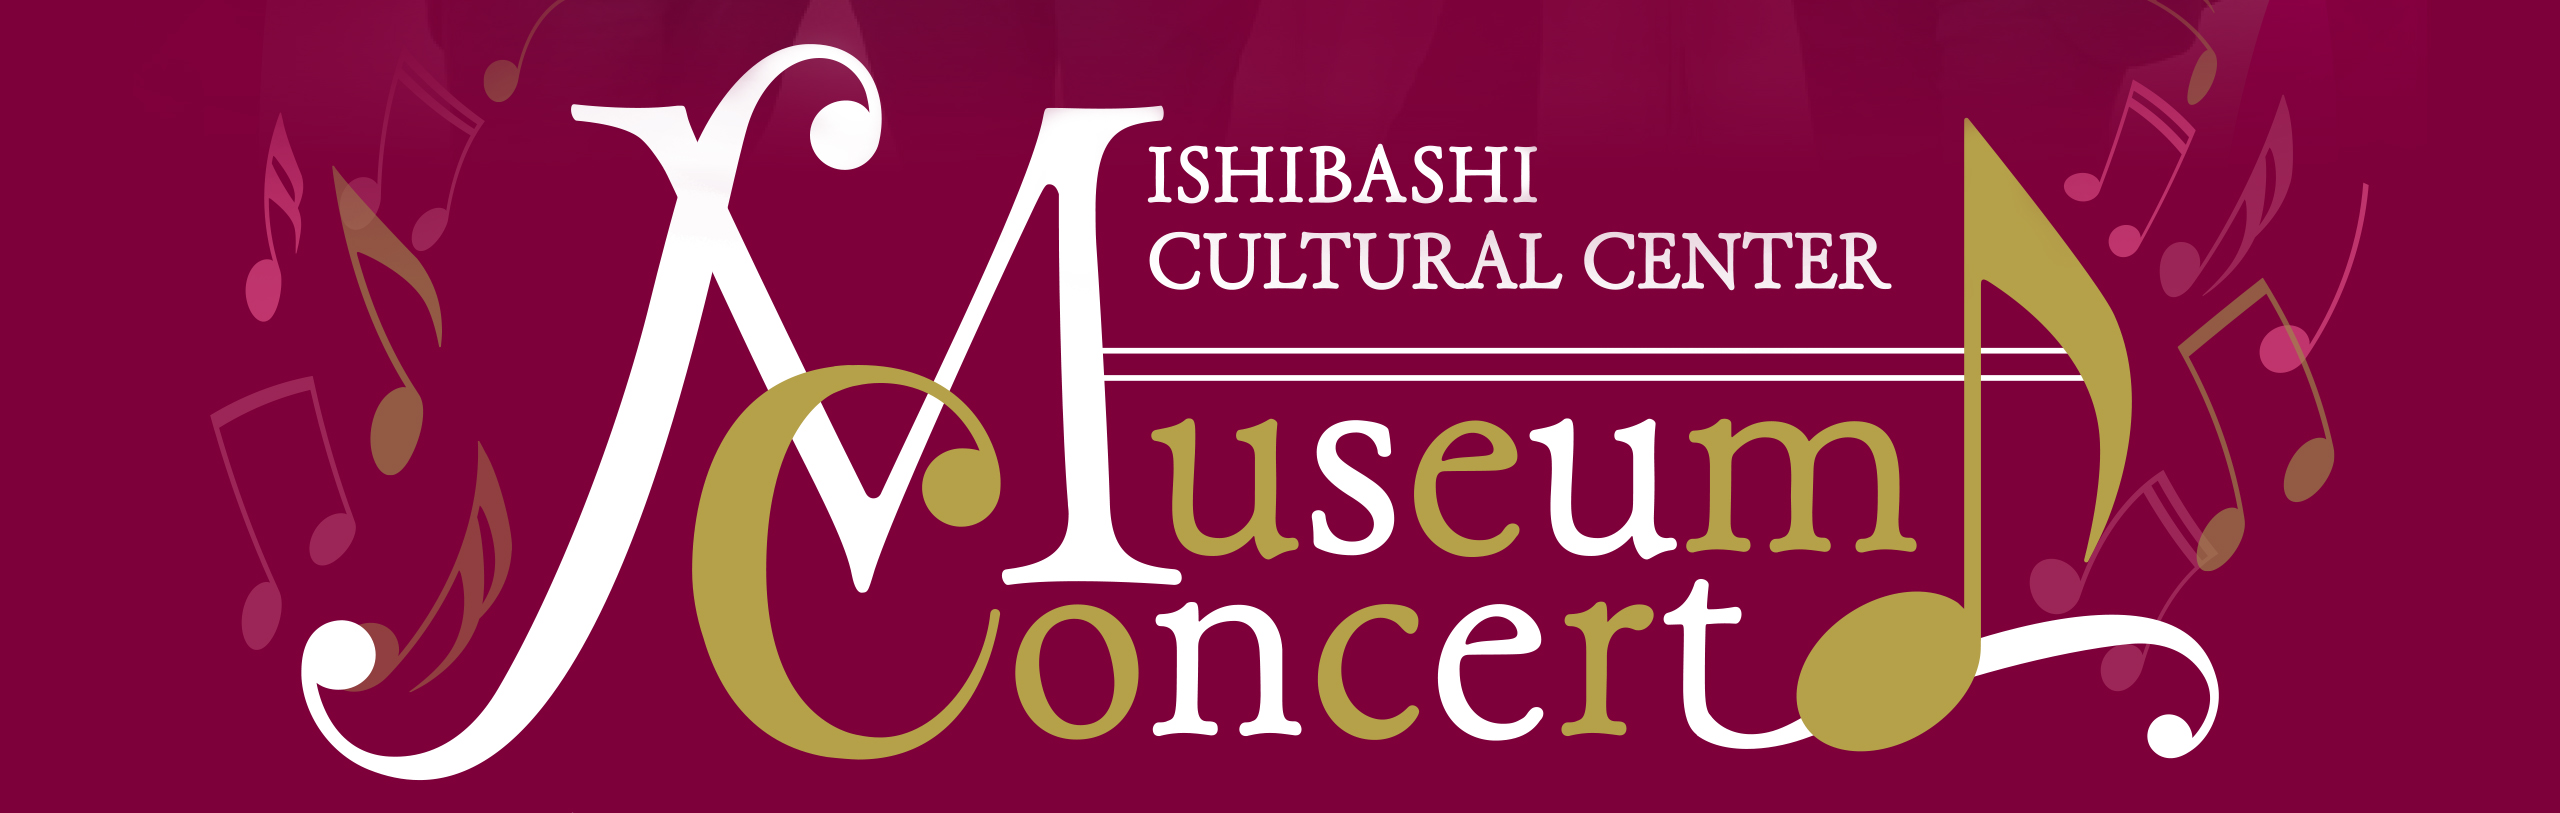 石橋文化センターミュージアムコンサート